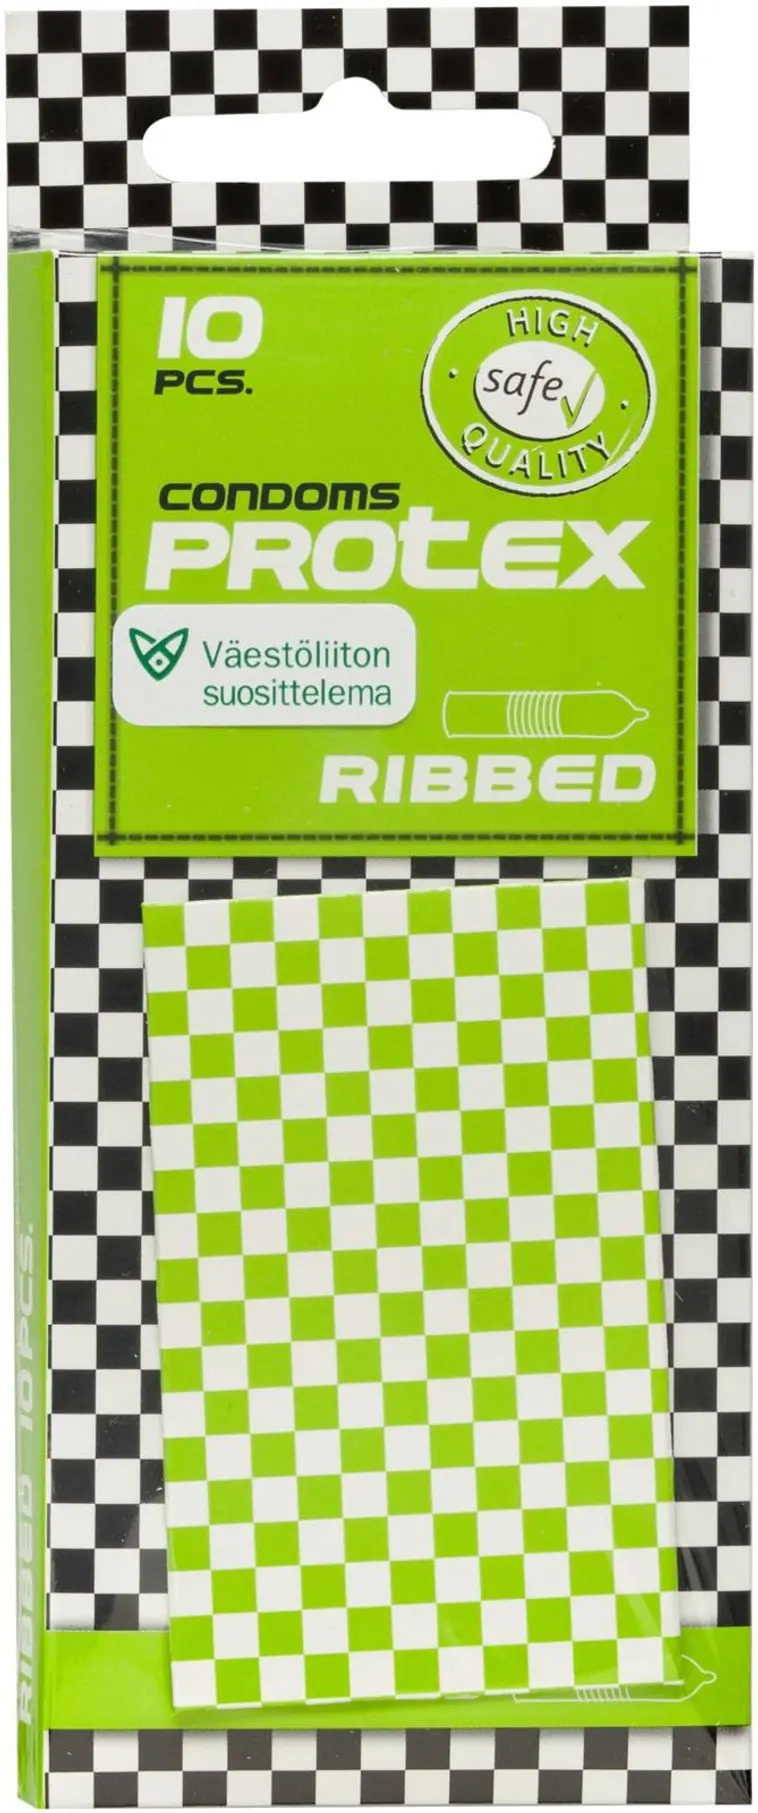 Protex Ribbed 10 pcs Condoms